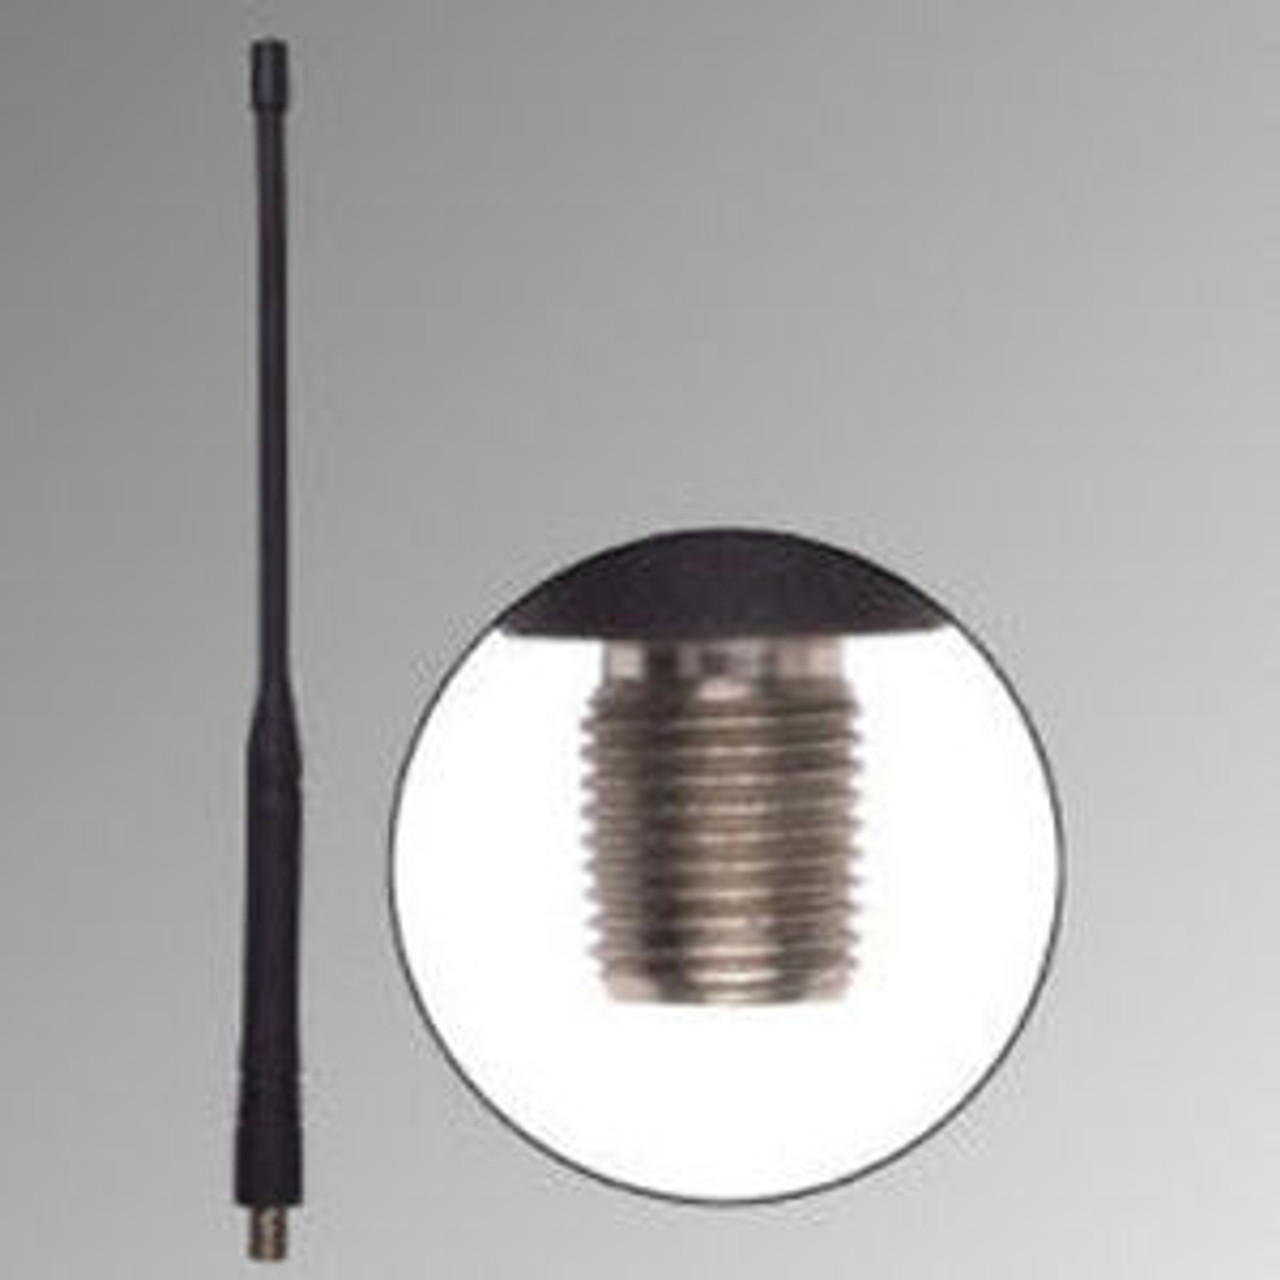 Relm / BK DPH Long Range Antenna - 10.5", VHF, 150-160 MHz